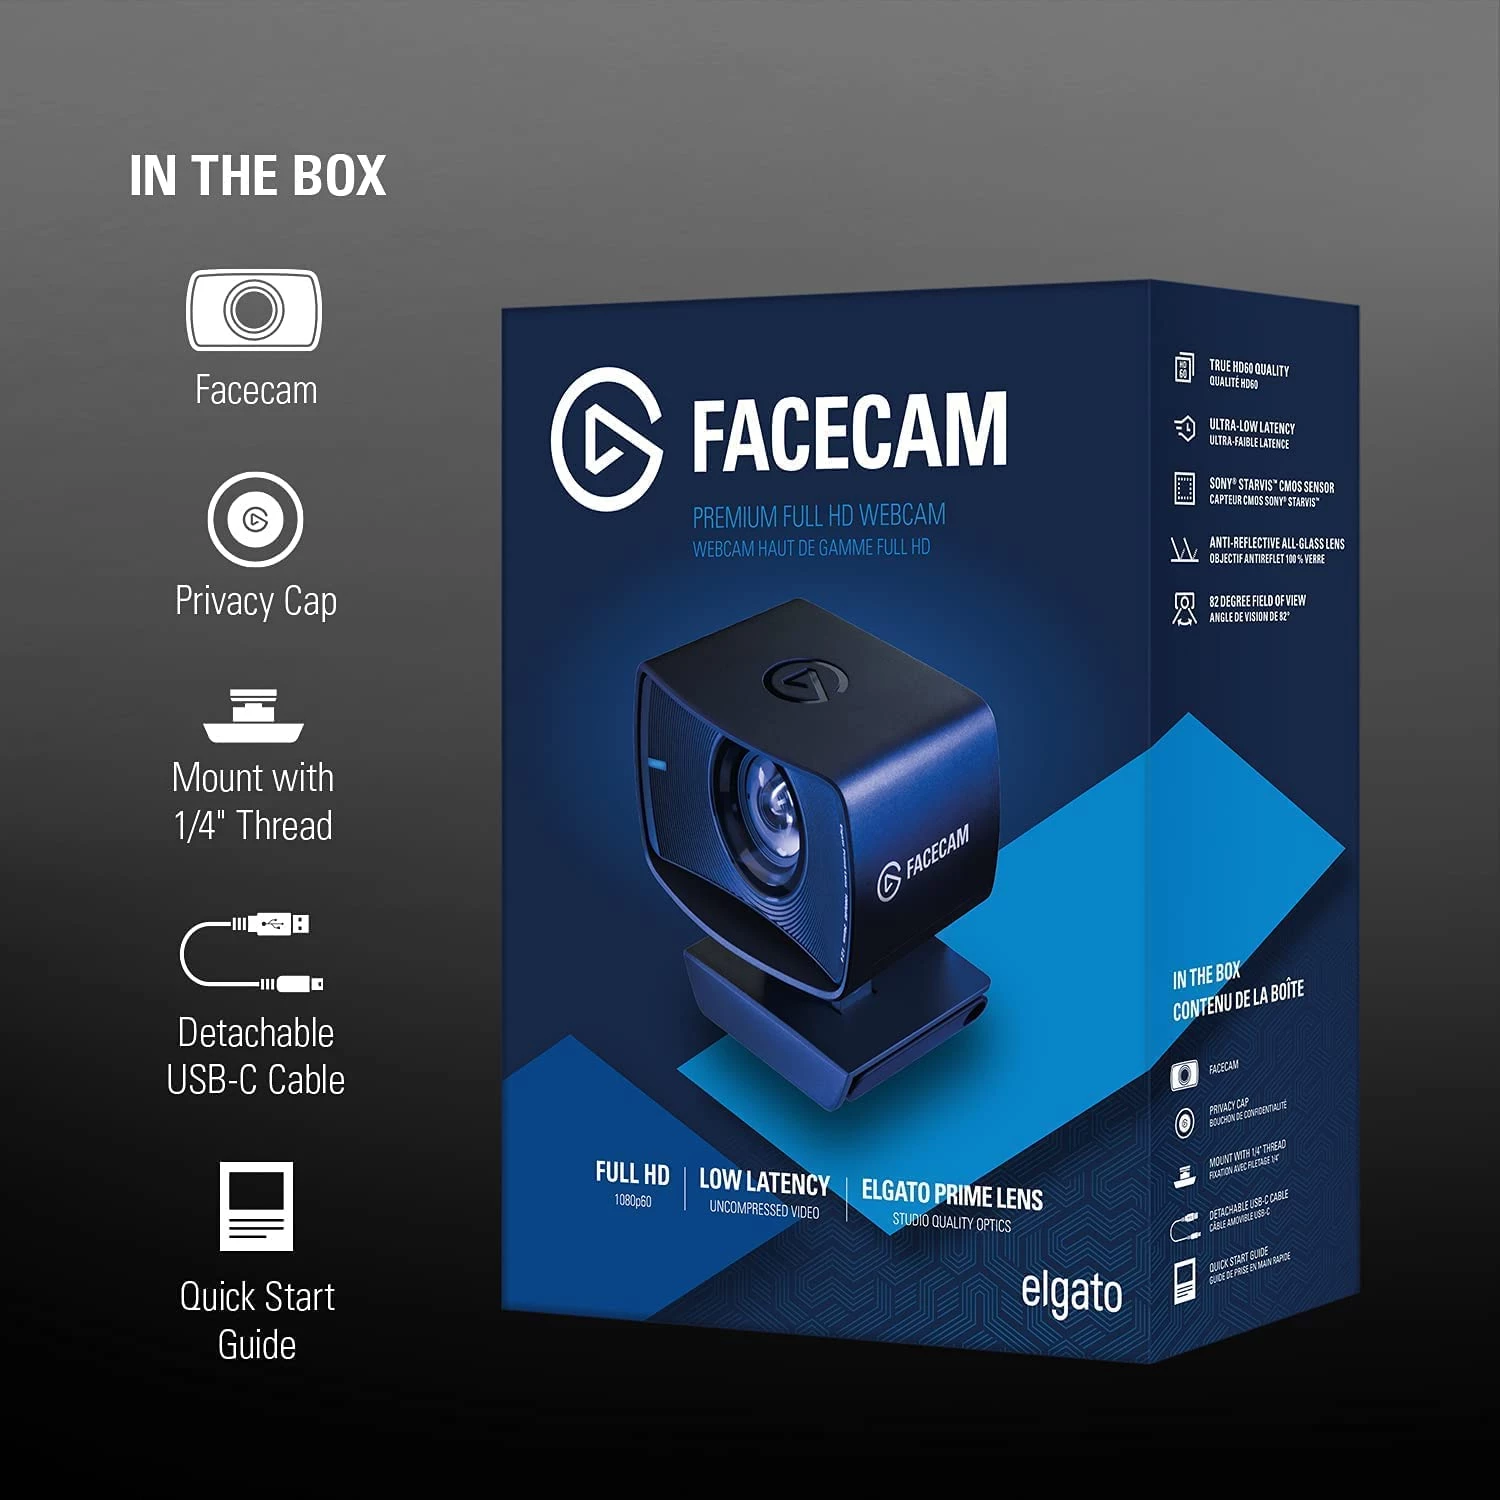 Facecam - Advanced Image Engine Processes Maximum Data At High Speed